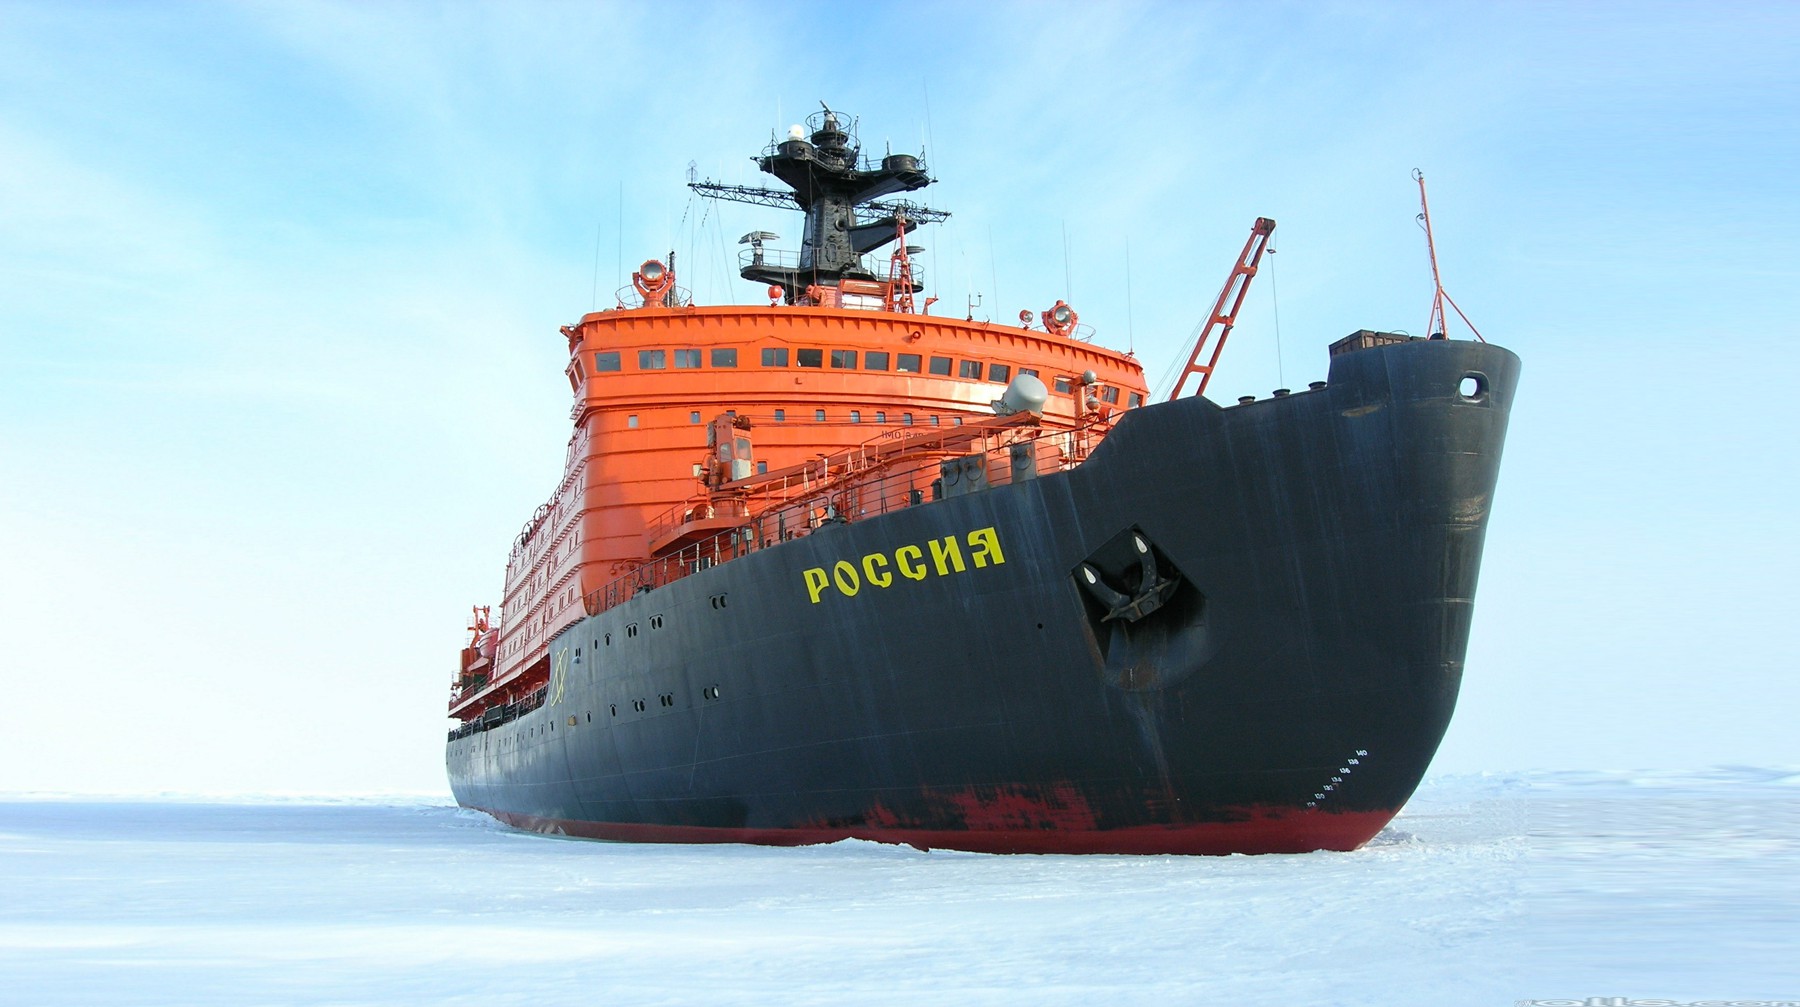 Dailystorm - Готова ли Россия к освоению Арктики? США и Китай могут потеснить россиян на Северном морском пути